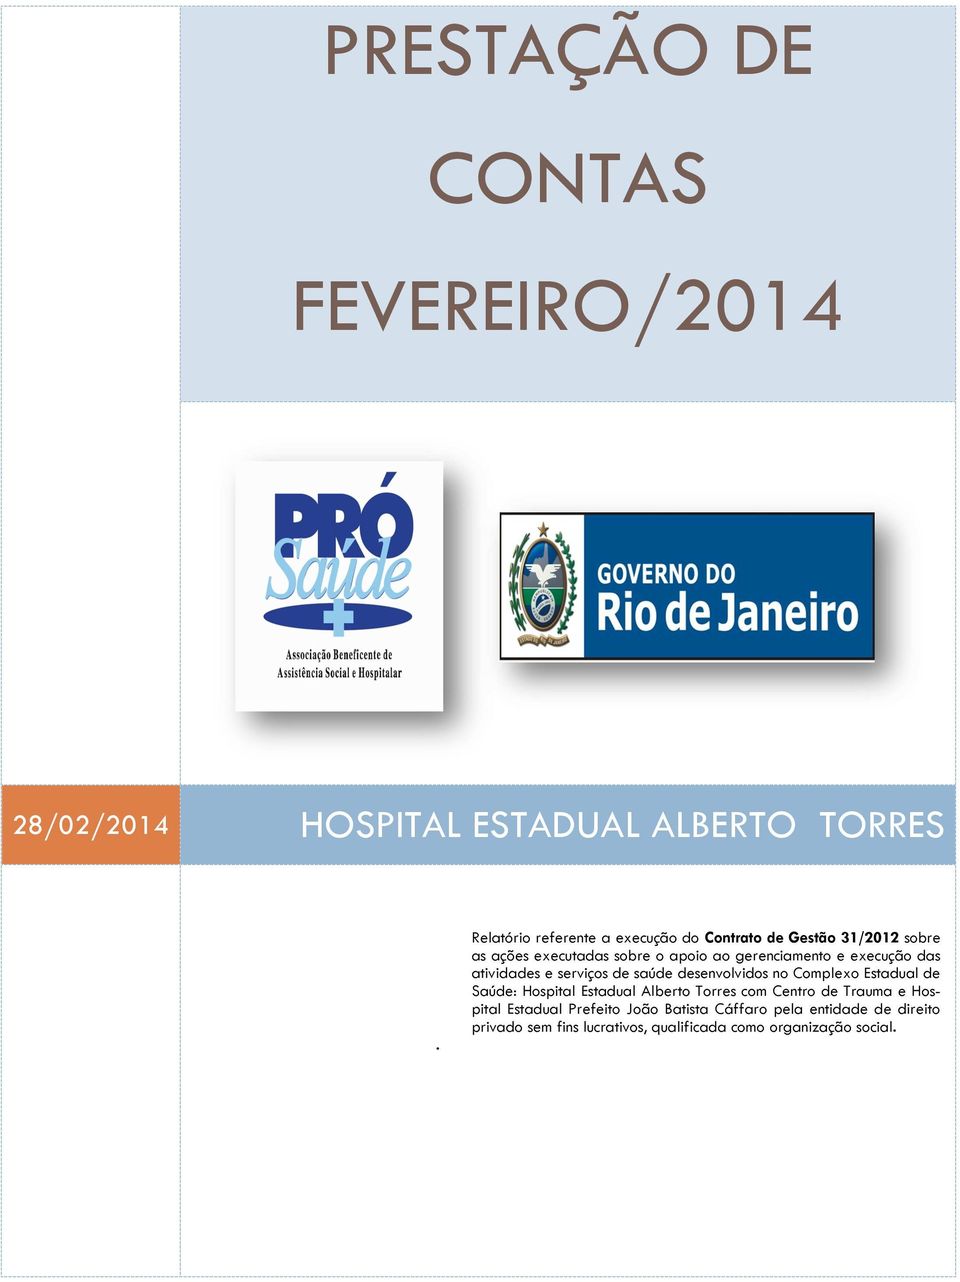 execução das atividades e serviços de saúde desenvolvidos no Complexo Estadual de Saúde: Hospital Estadual Alberto Torres